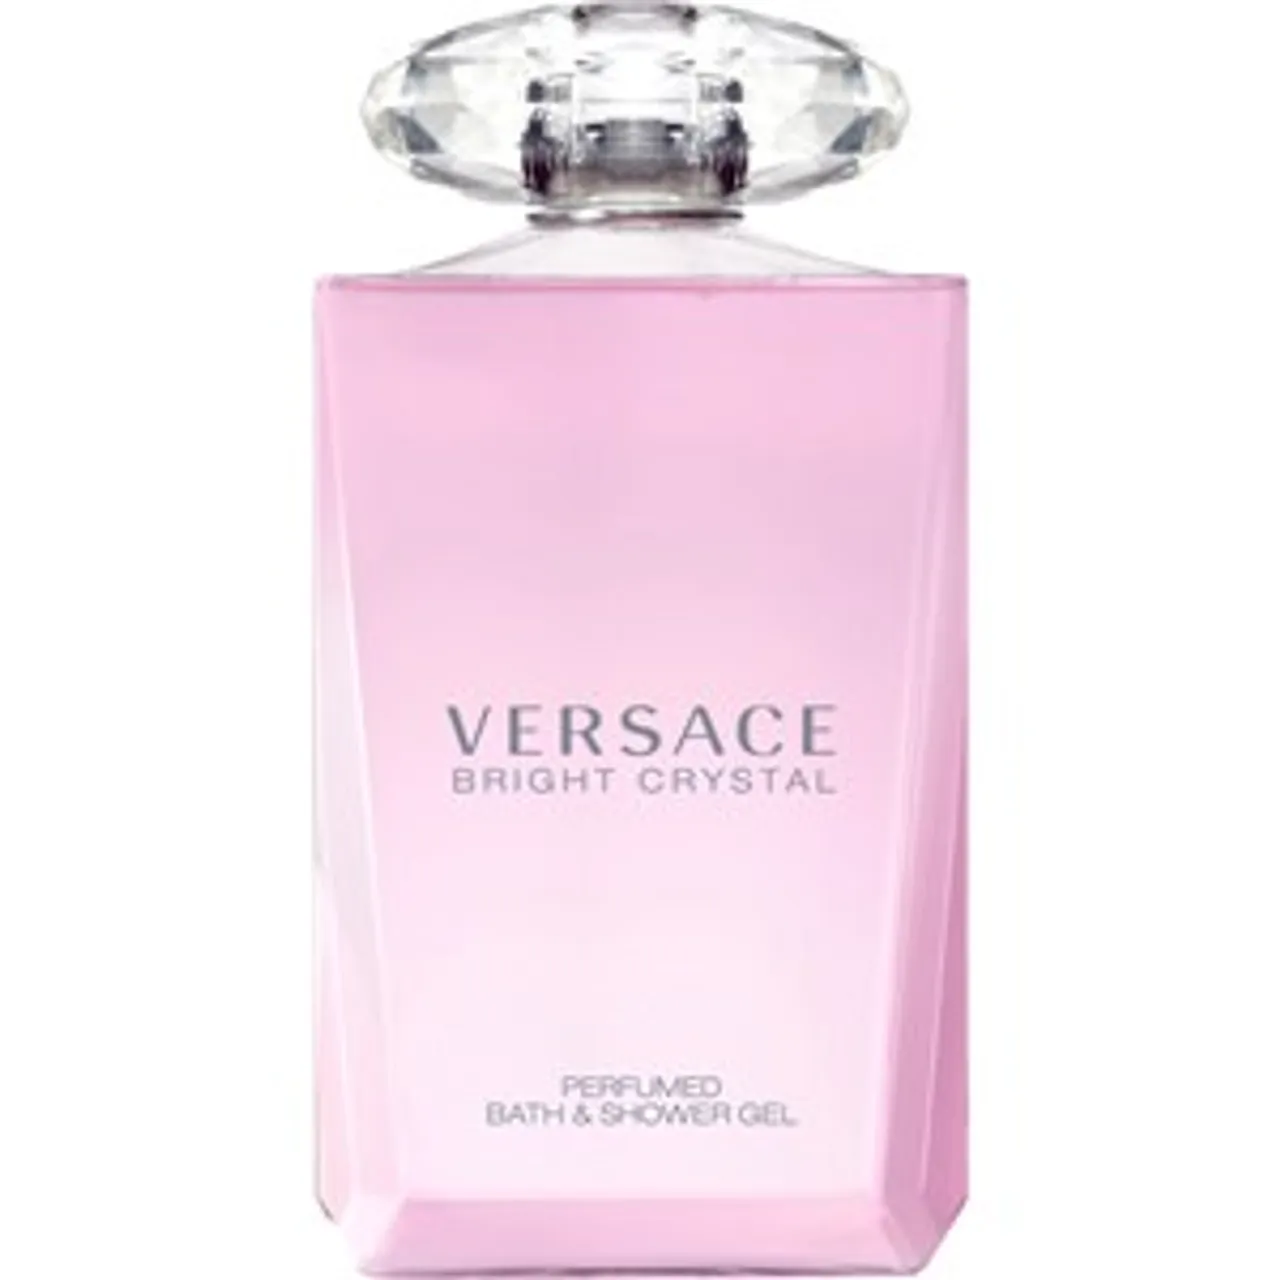 Versace Bright Crystal Bath & Shower Gel Duschgel Damen